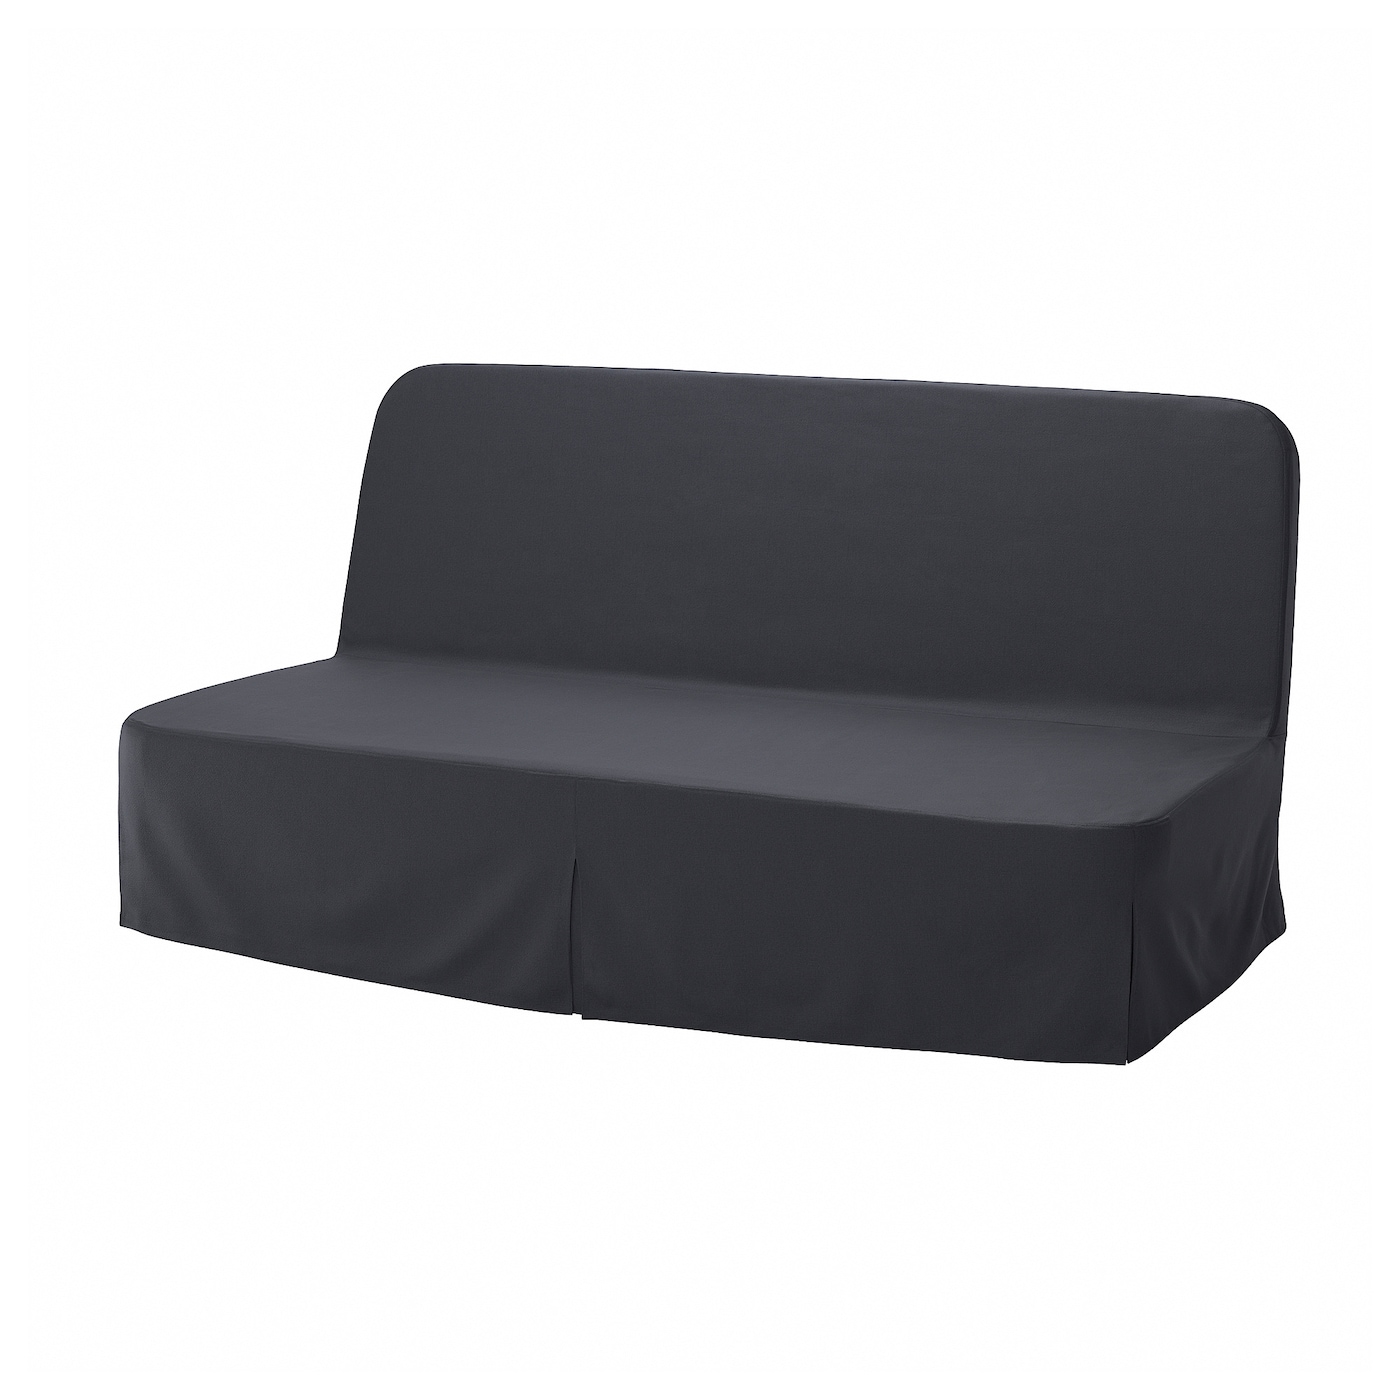 3-местный диван-кровать NYHAMN, включая пружинный матрас Naggen/темно-серый IKEA складная двухцелевая спинка плавающий ряд с сетчатым гамаком водный развлекательный шезлонг плавающая кровать диван